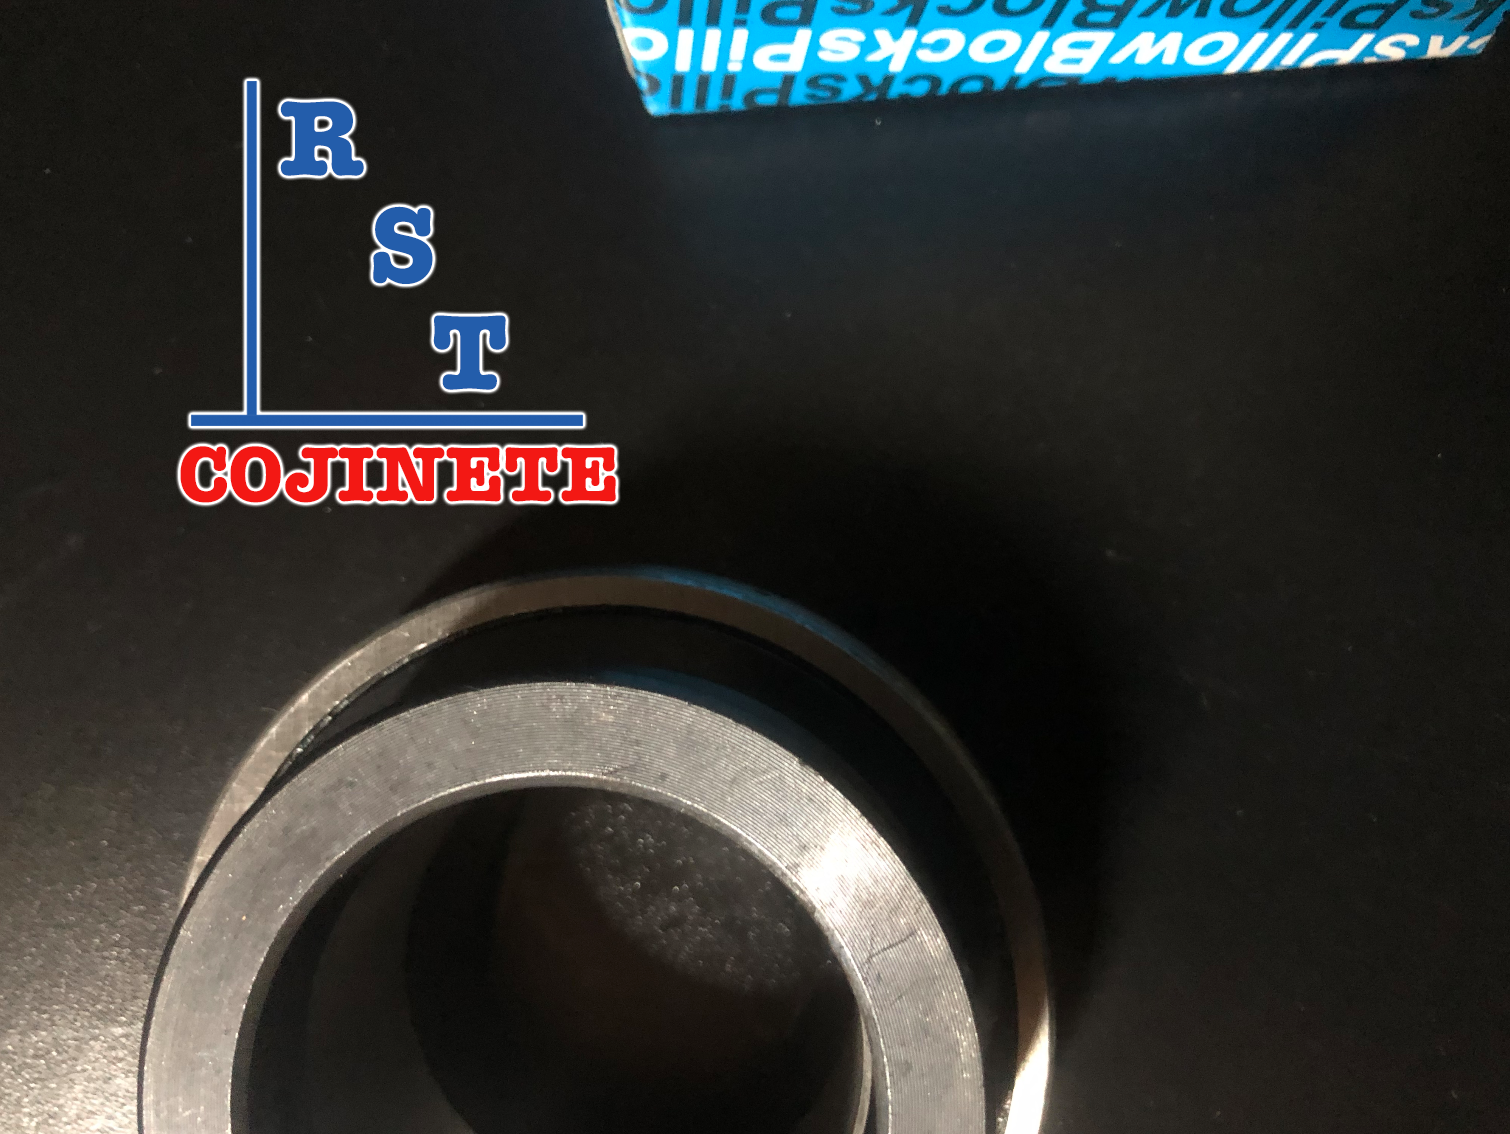 Rodamiento SA205-16 | Cojinete para chumaceras con eje de 1" con respaldo plano y anillo excéntrico